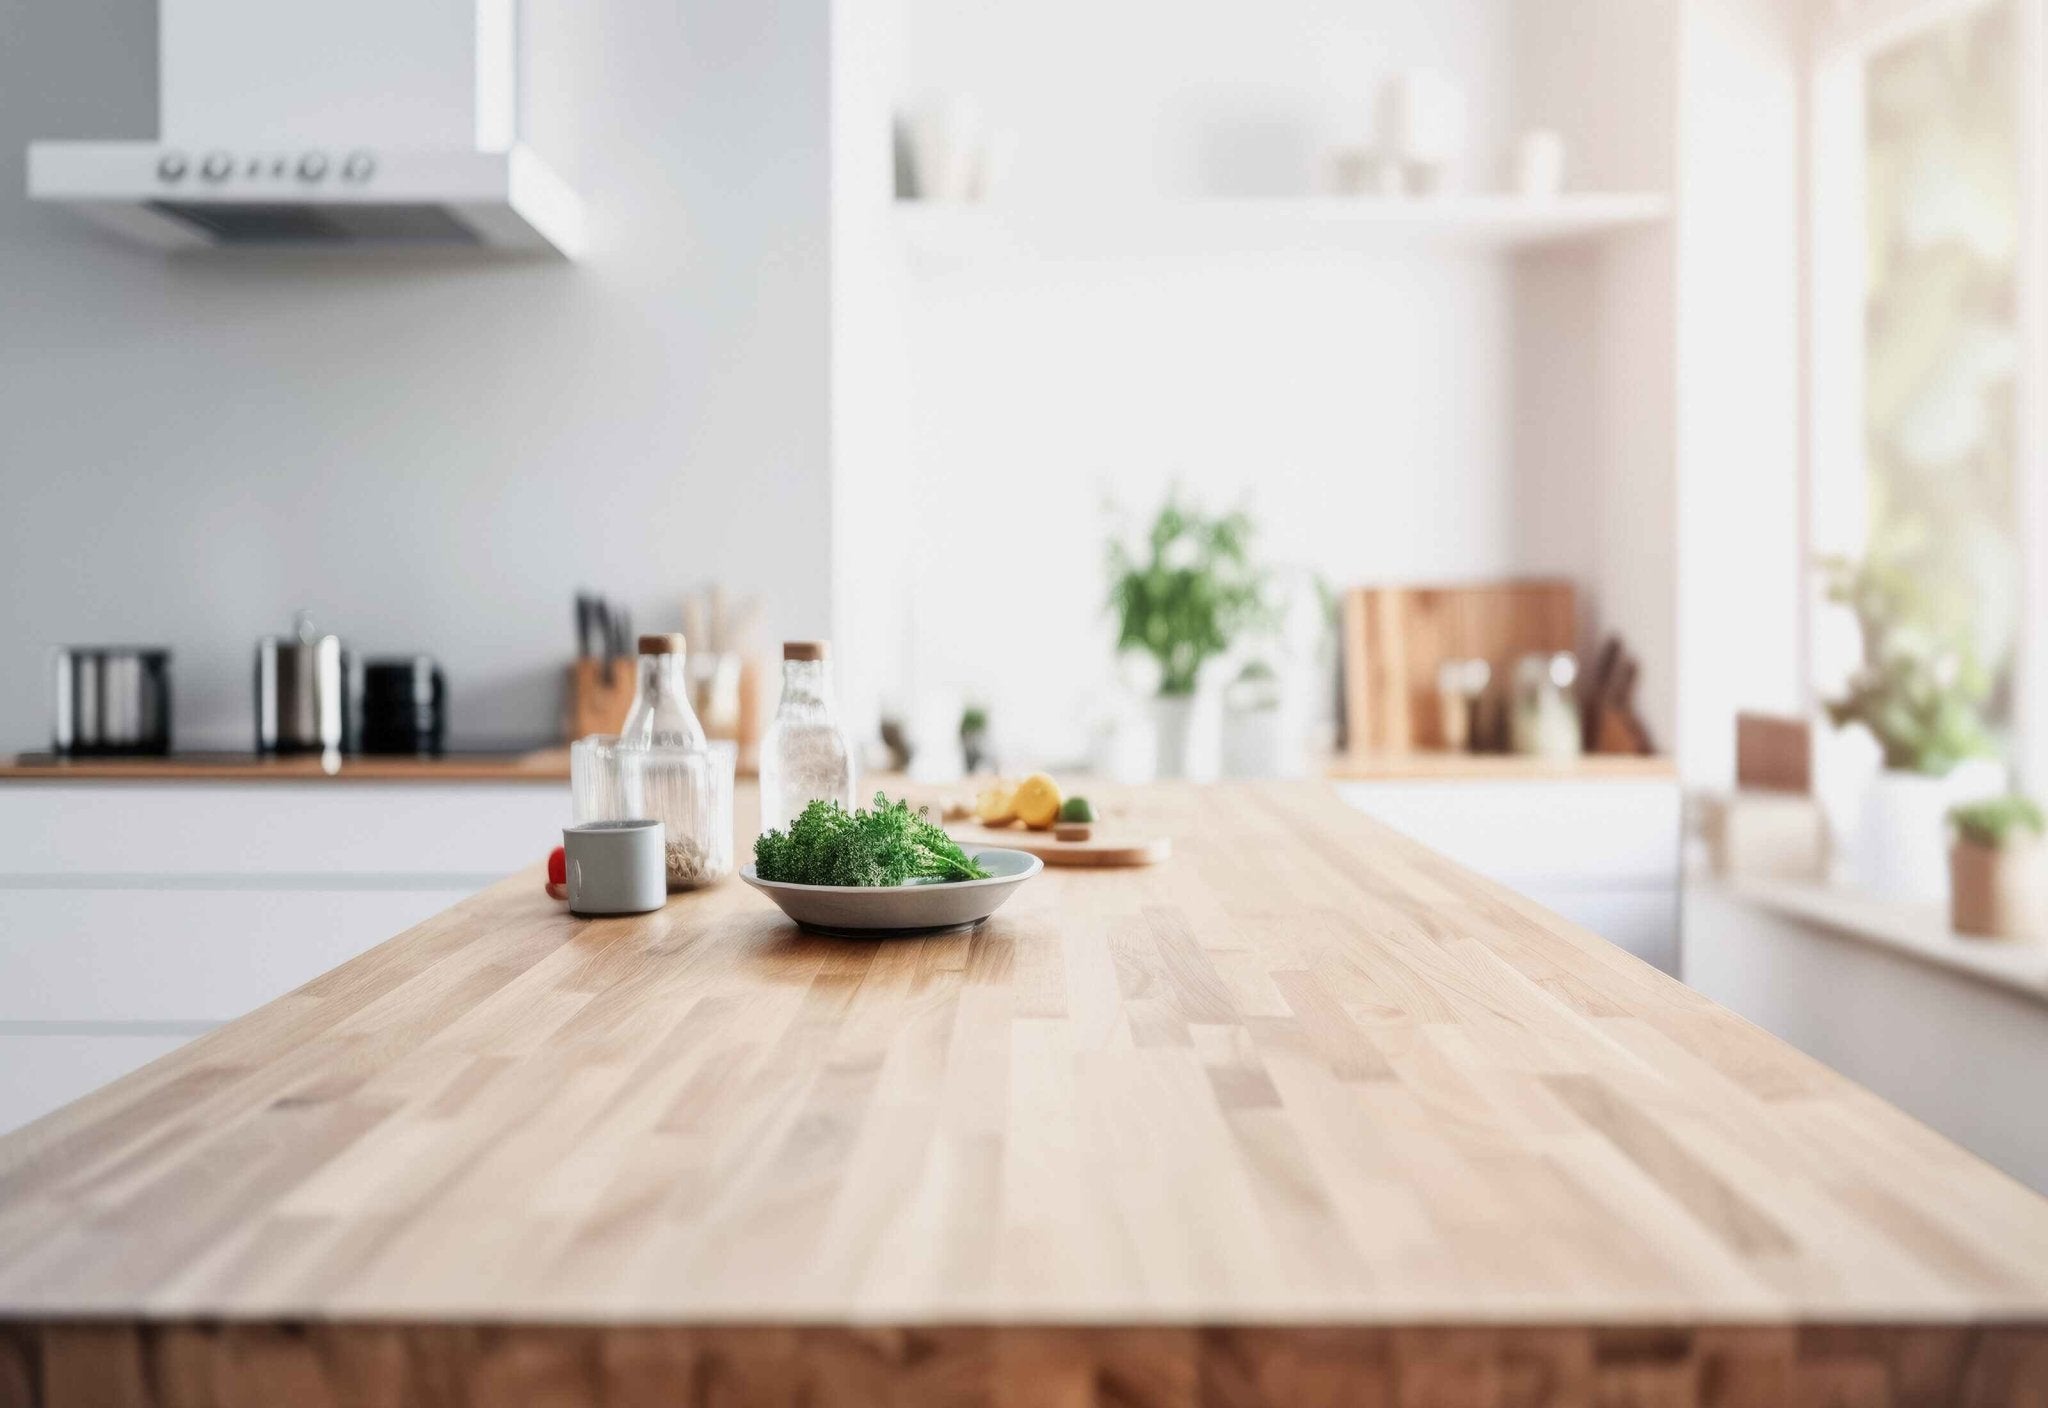 Grüne Materialien für Küchenoberflächen: Nachhaltigkeit trifft auf stilvolles Design - nordesign